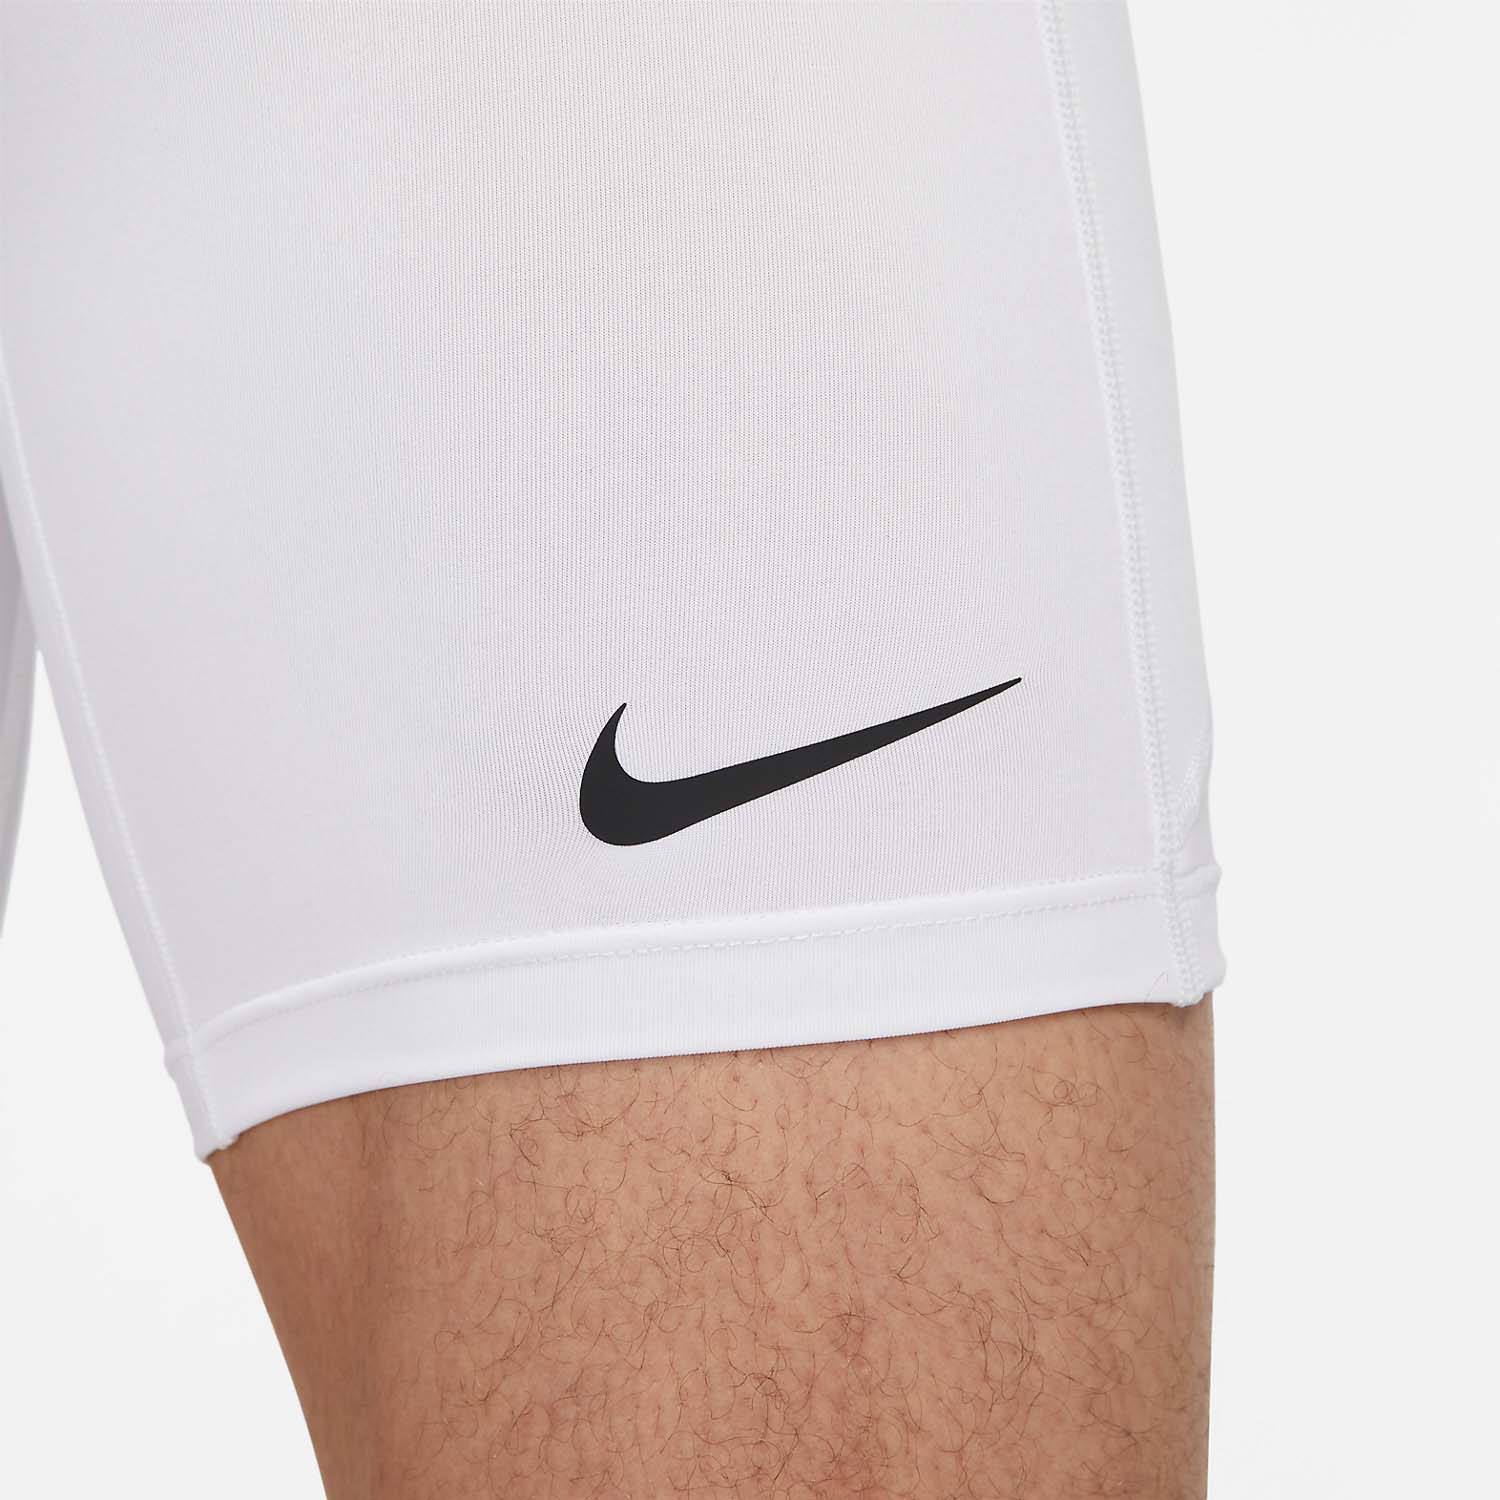 Nike Dri-FIT Pro Mallas Cortas - White/Black